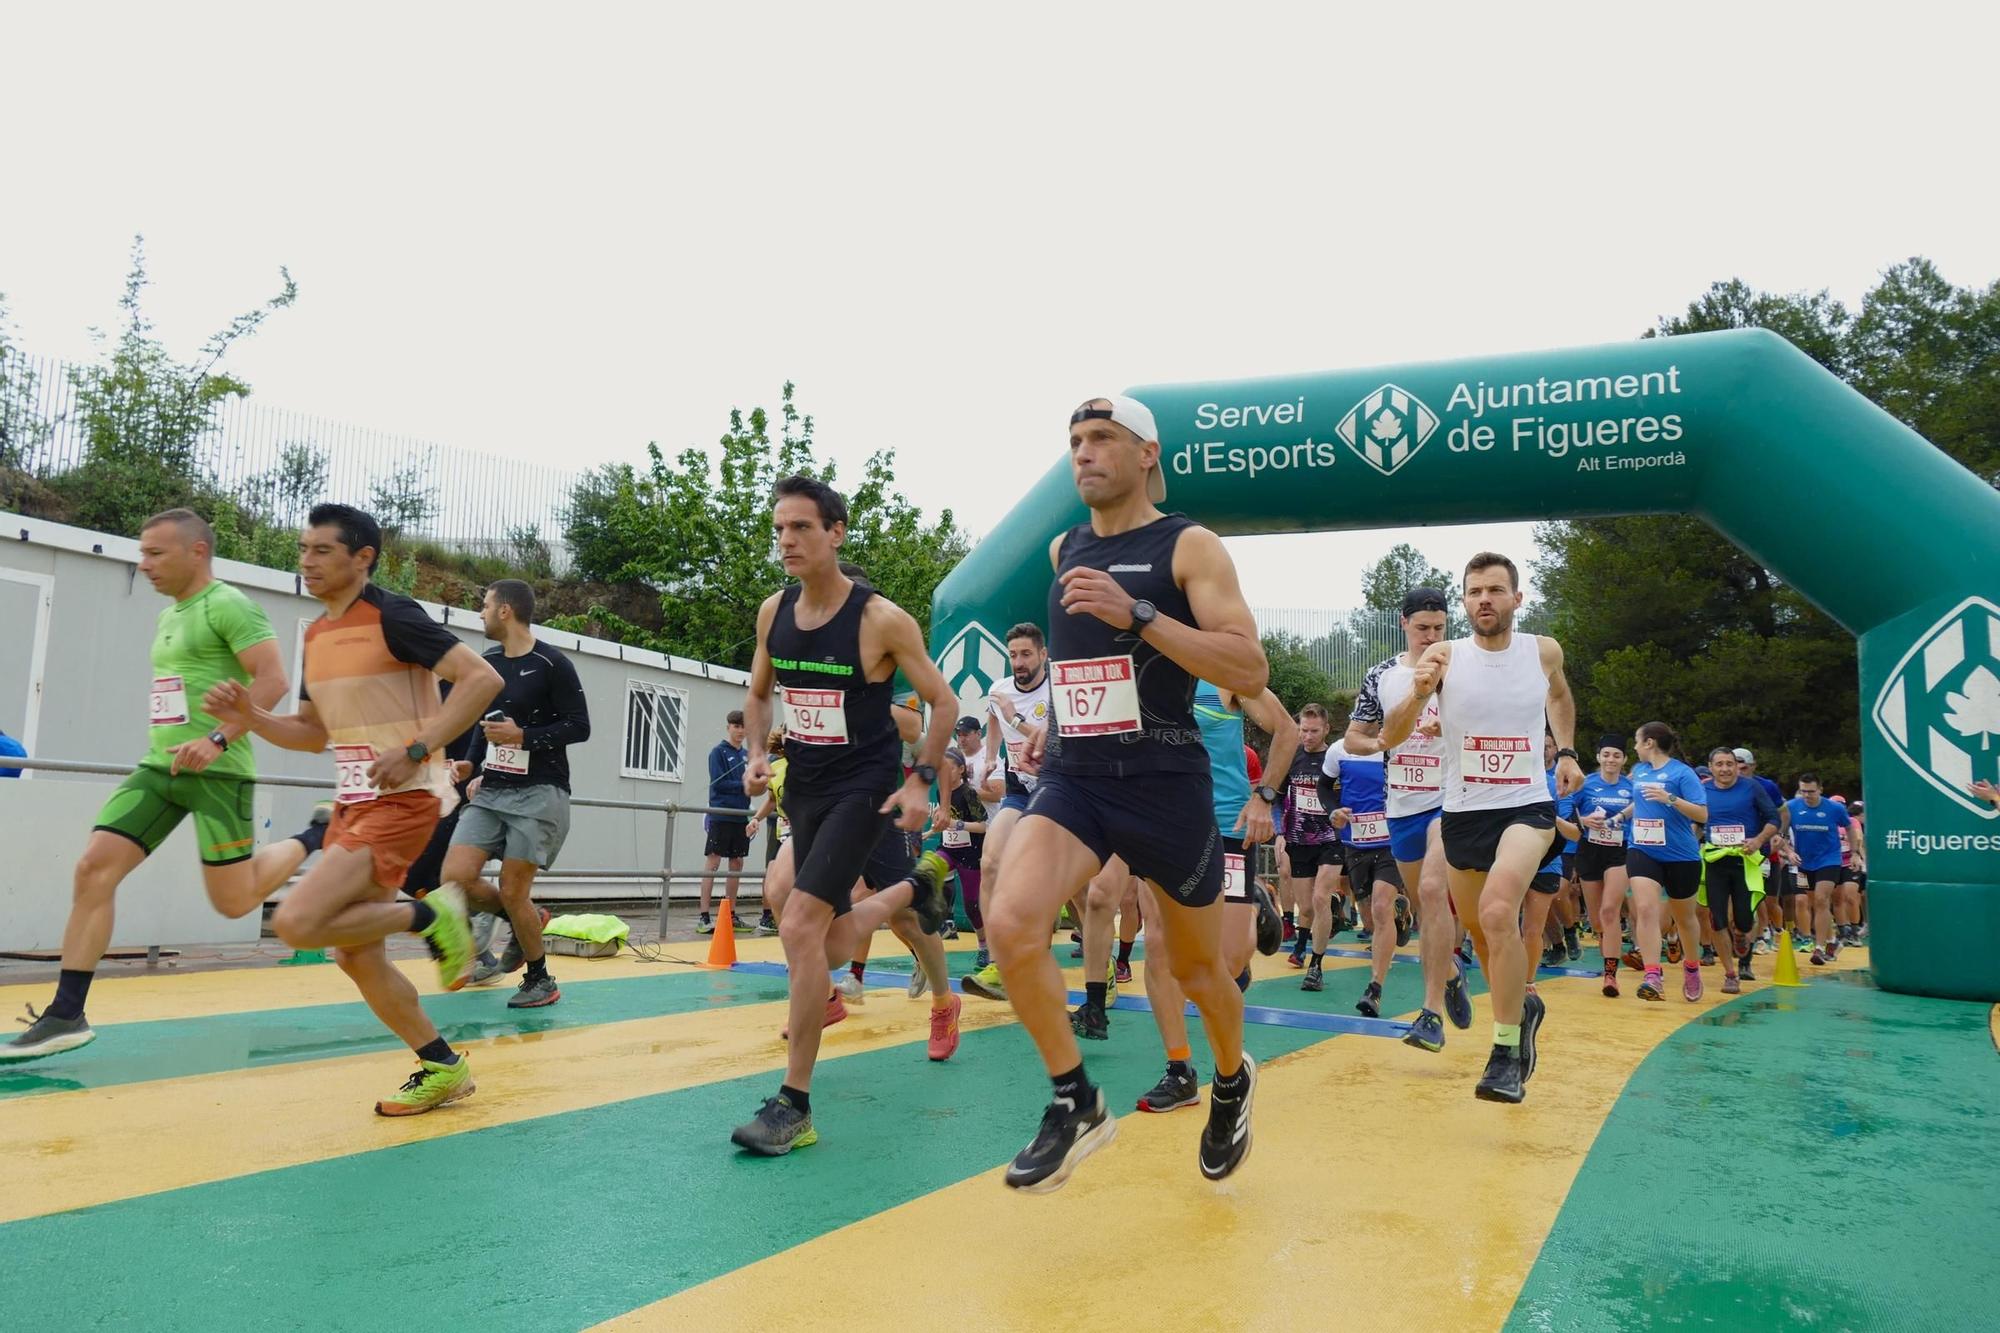 Unes 400 persones participen a la XVII Run Castell de Figueres